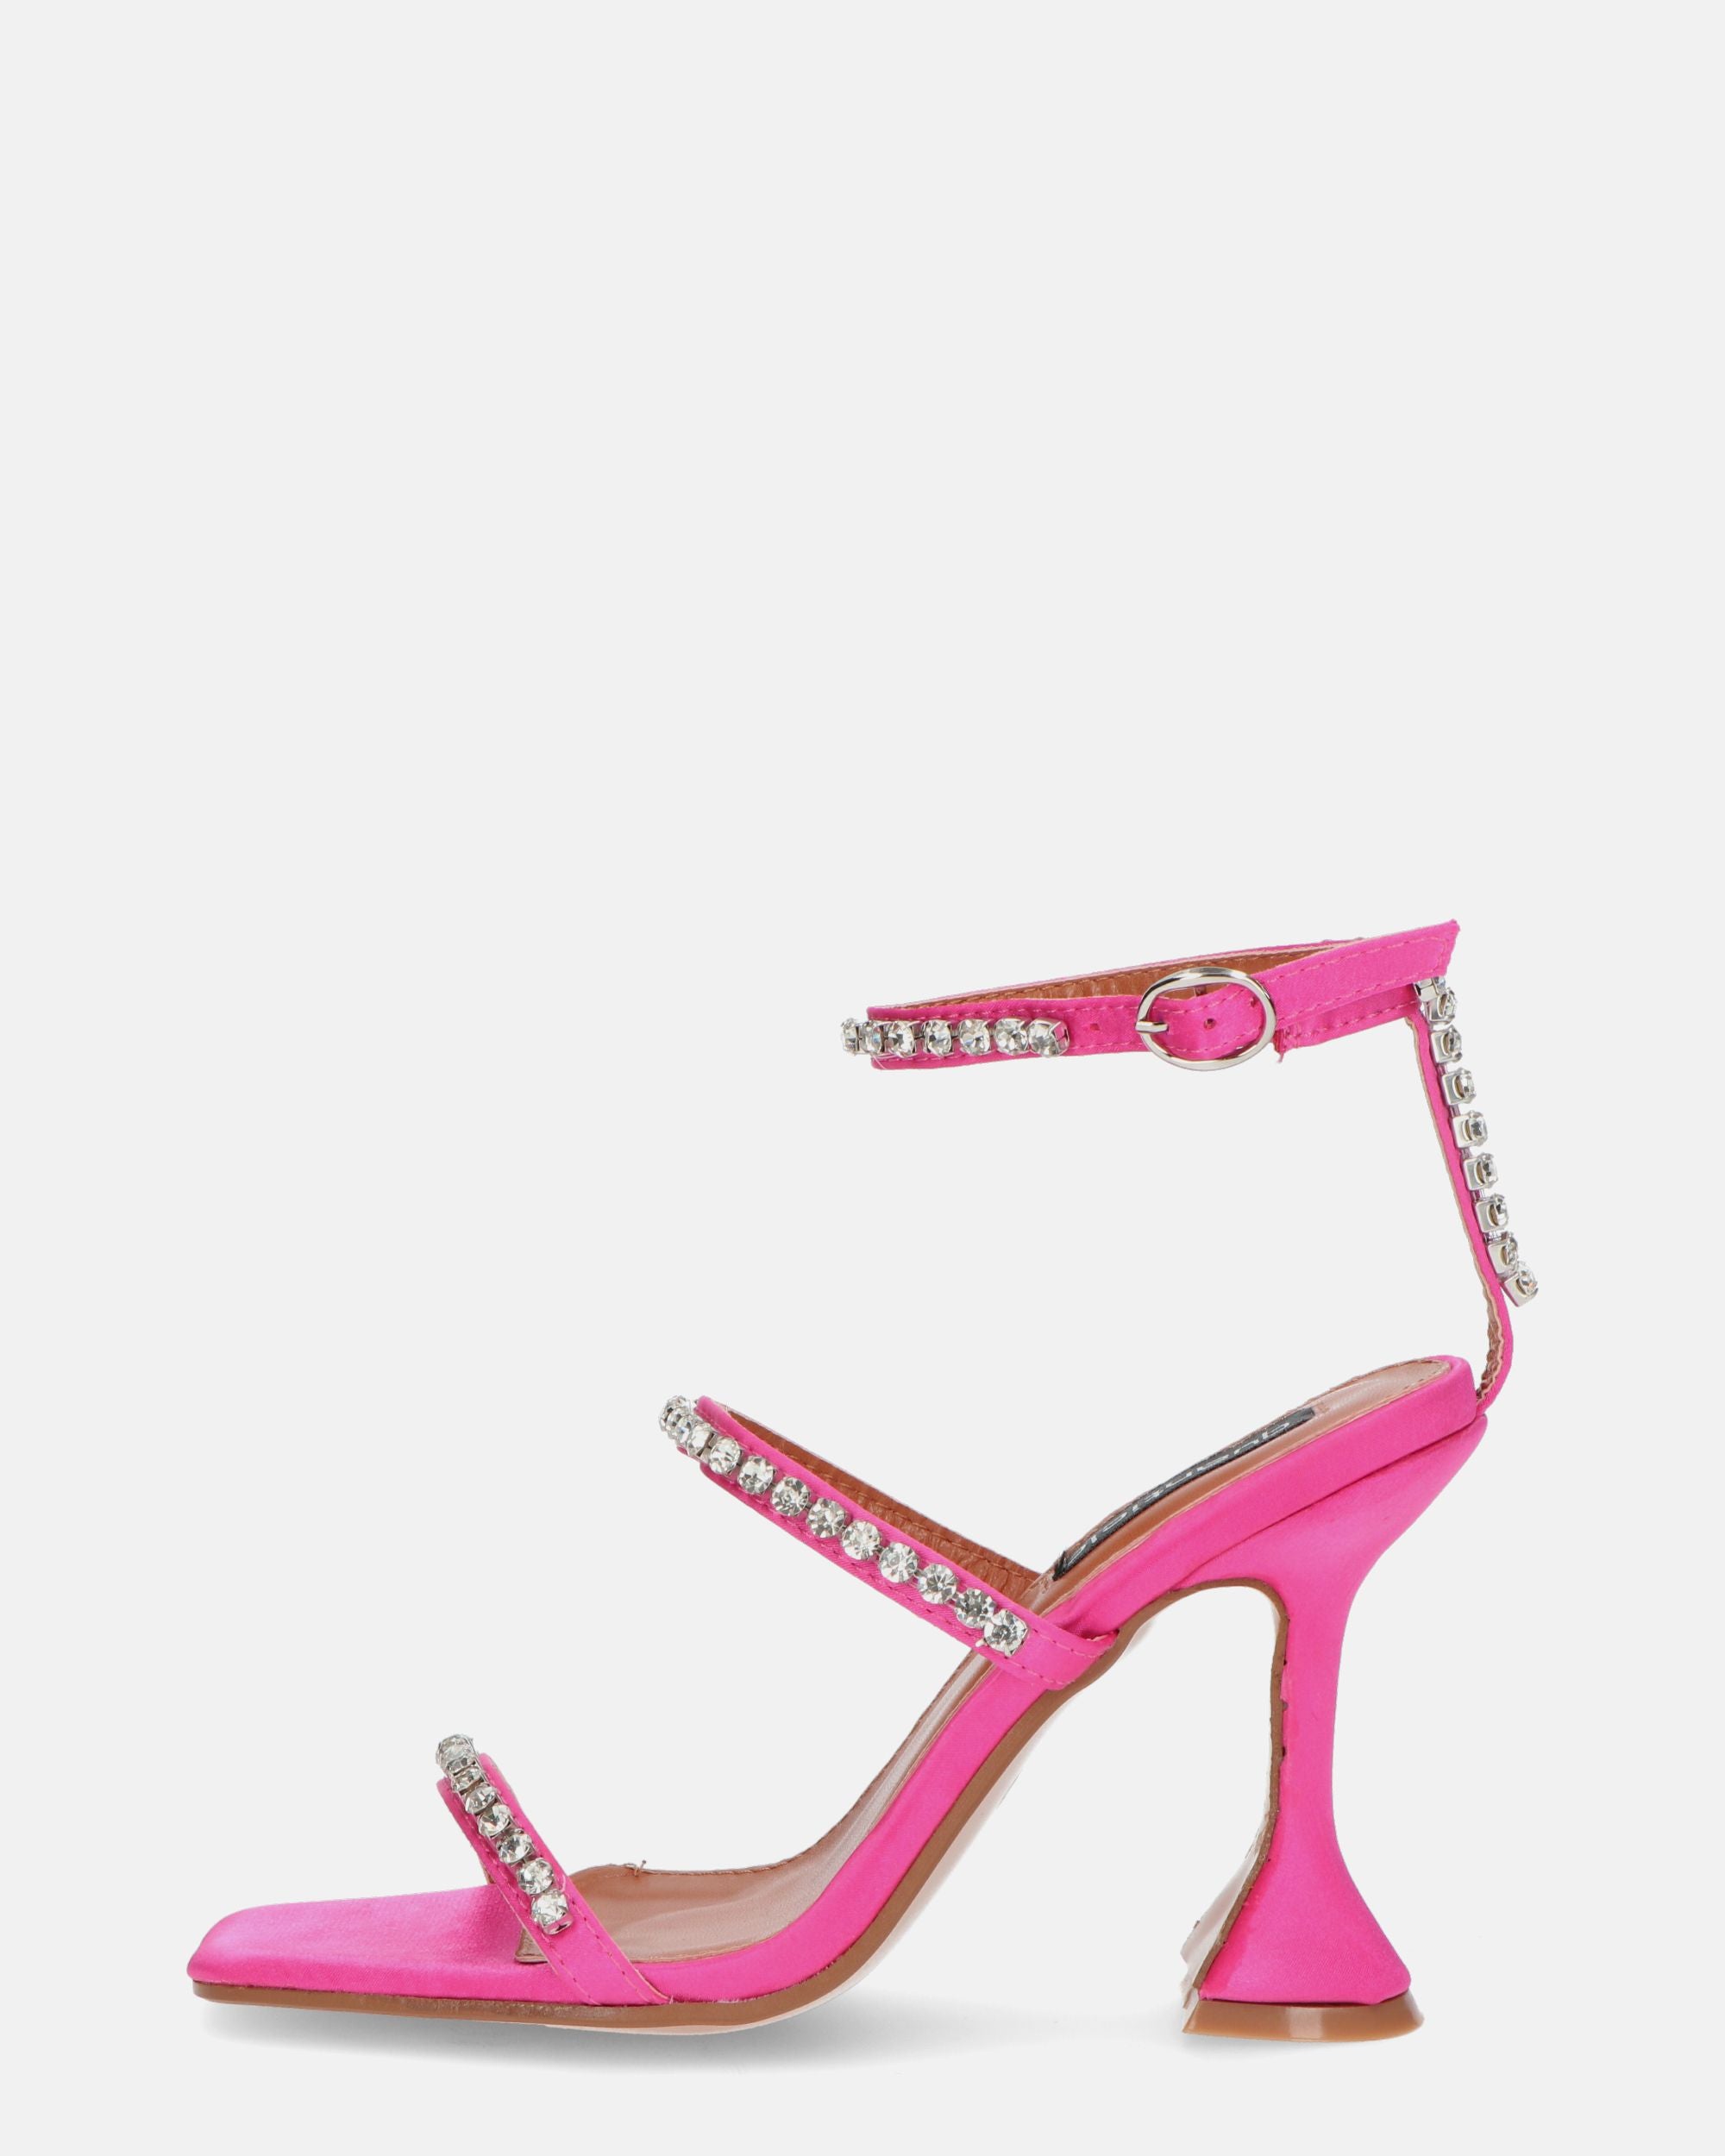 TAHLA - sandalo con tacco rosa e gemme in silver